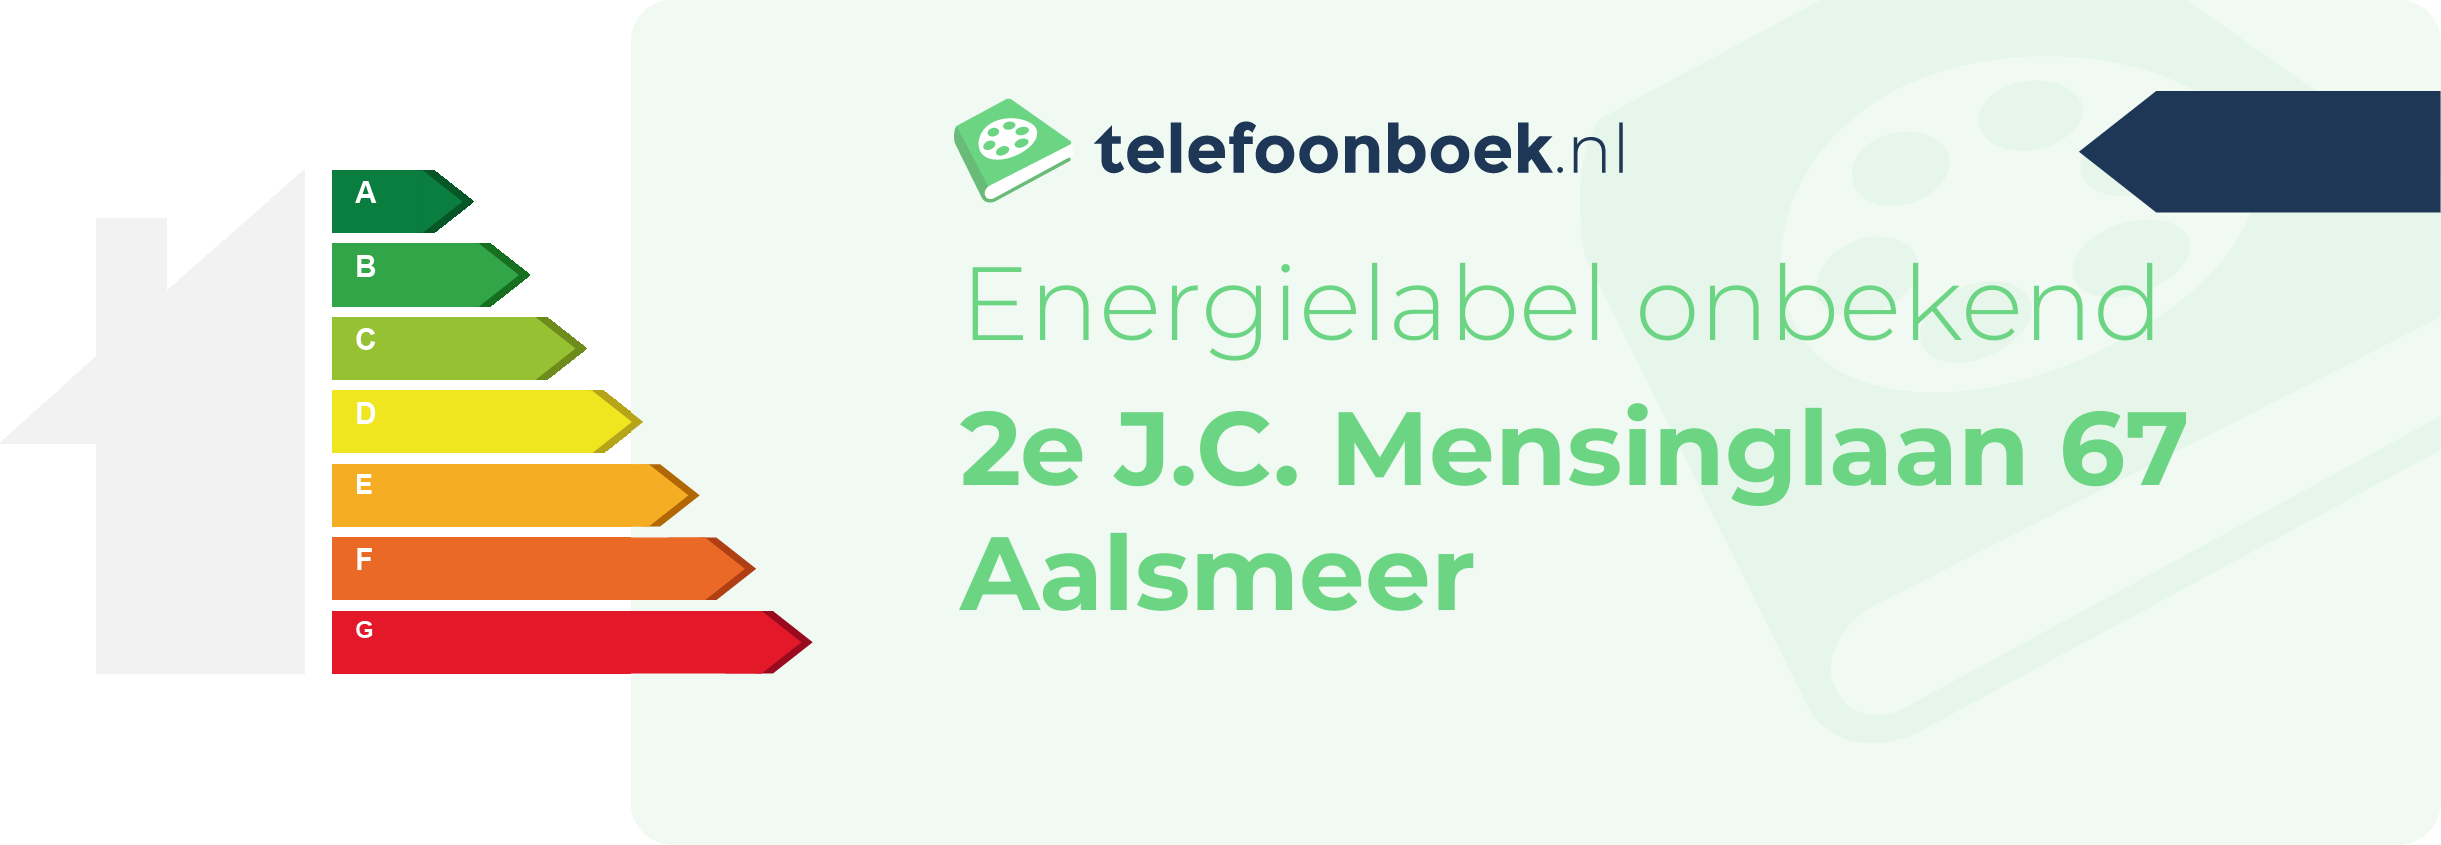 Energielabel 2e J.C. Mensinglaan 67 Aalsmeer